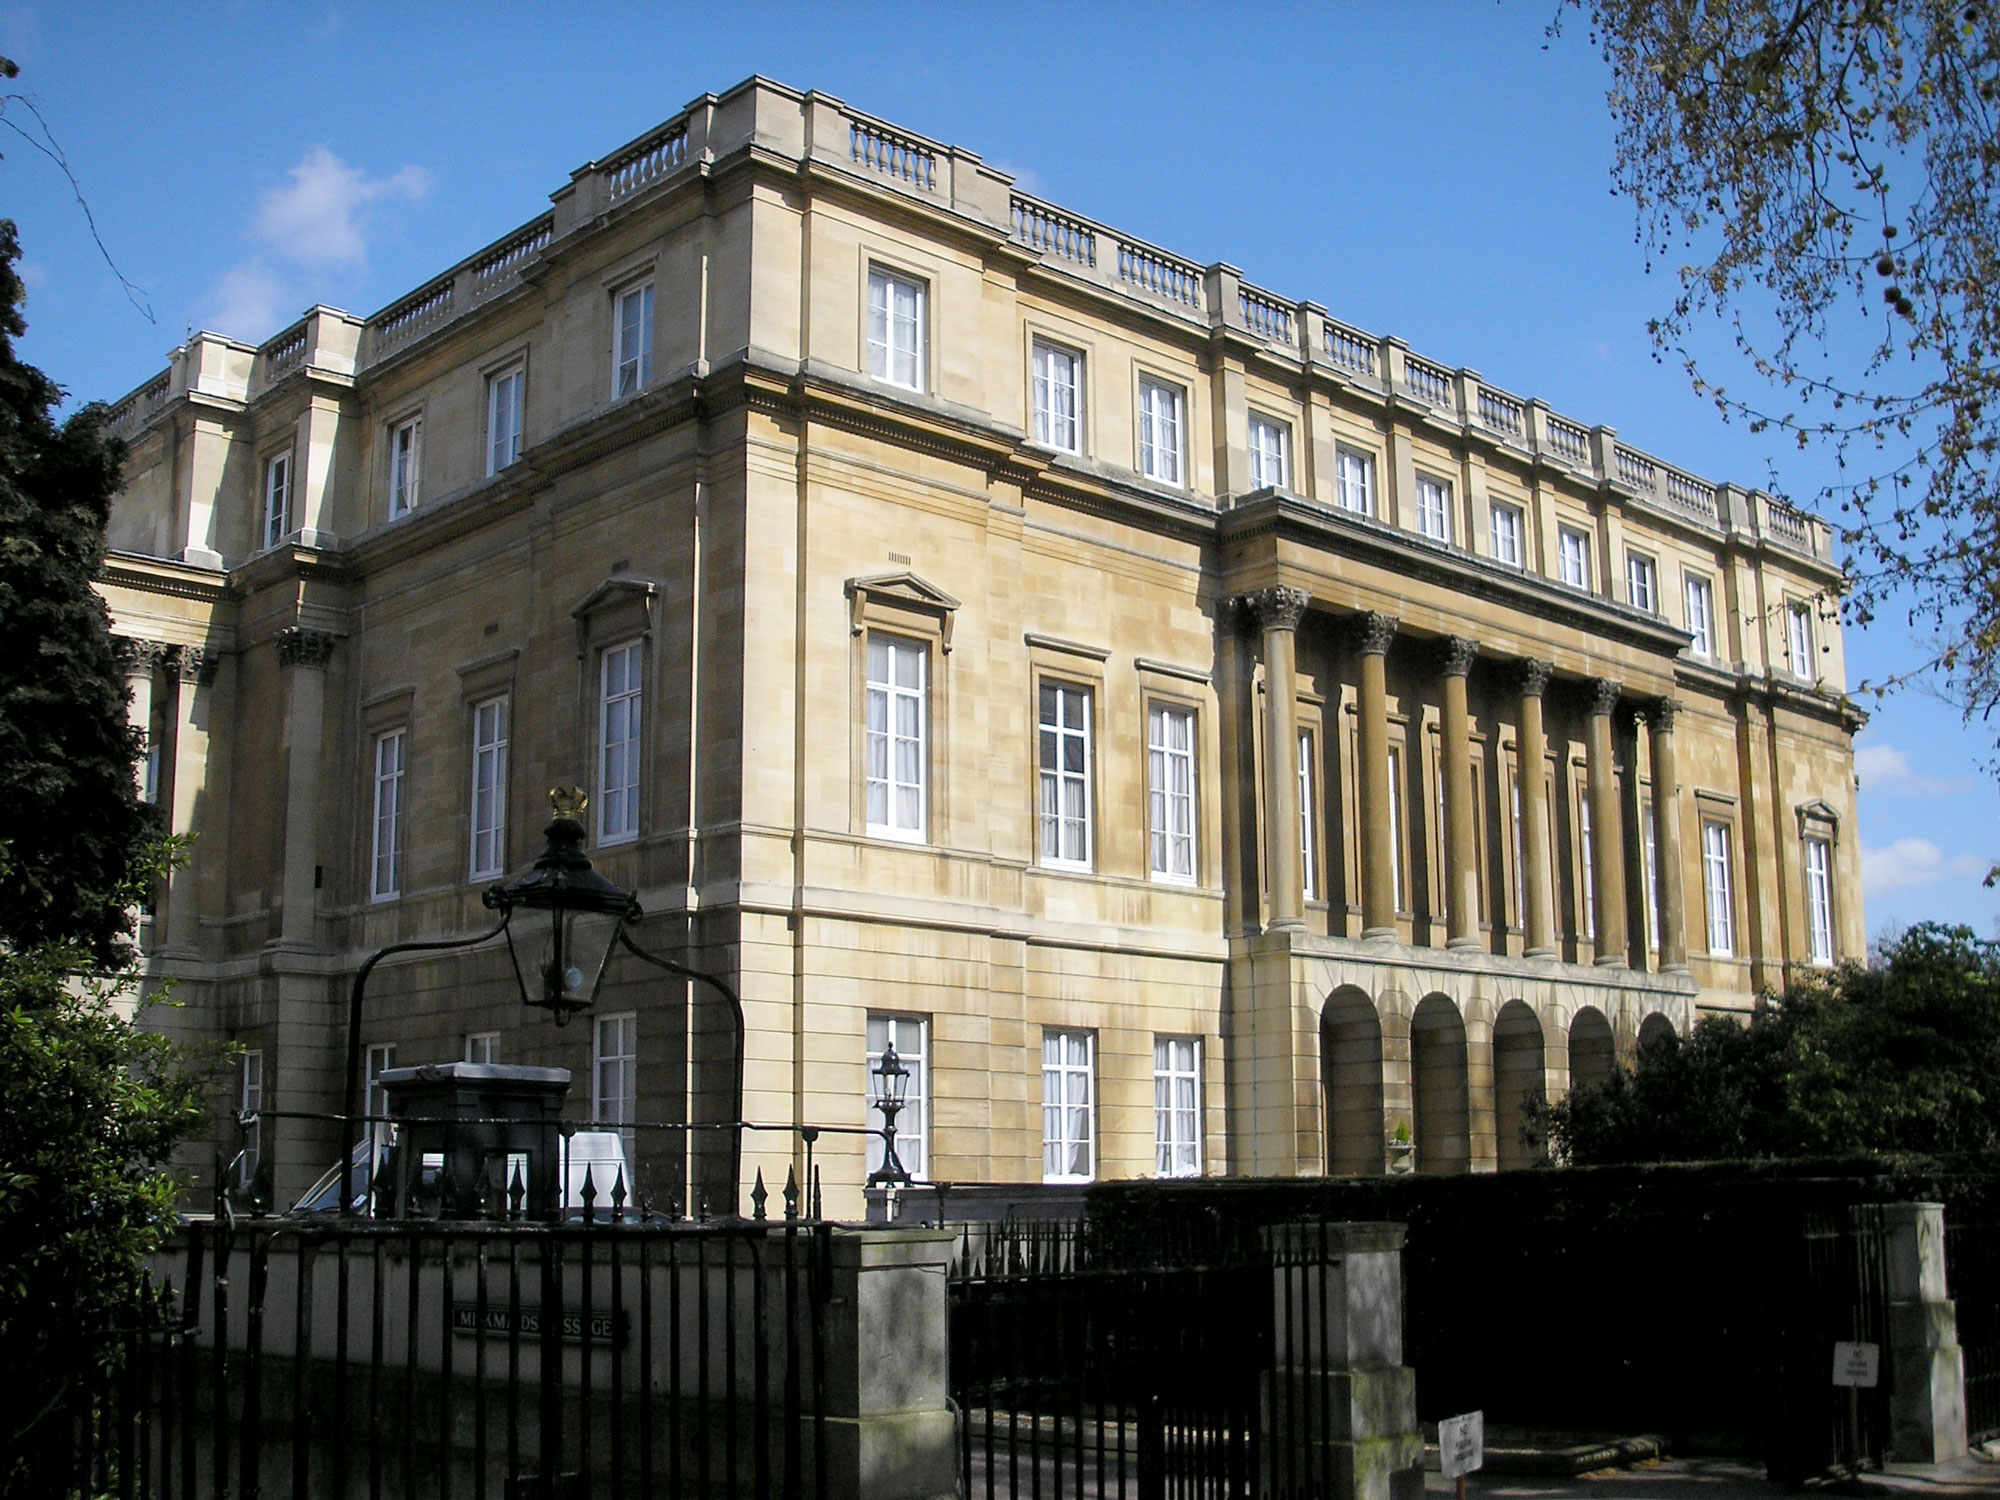 Lancaster House, St James's, London